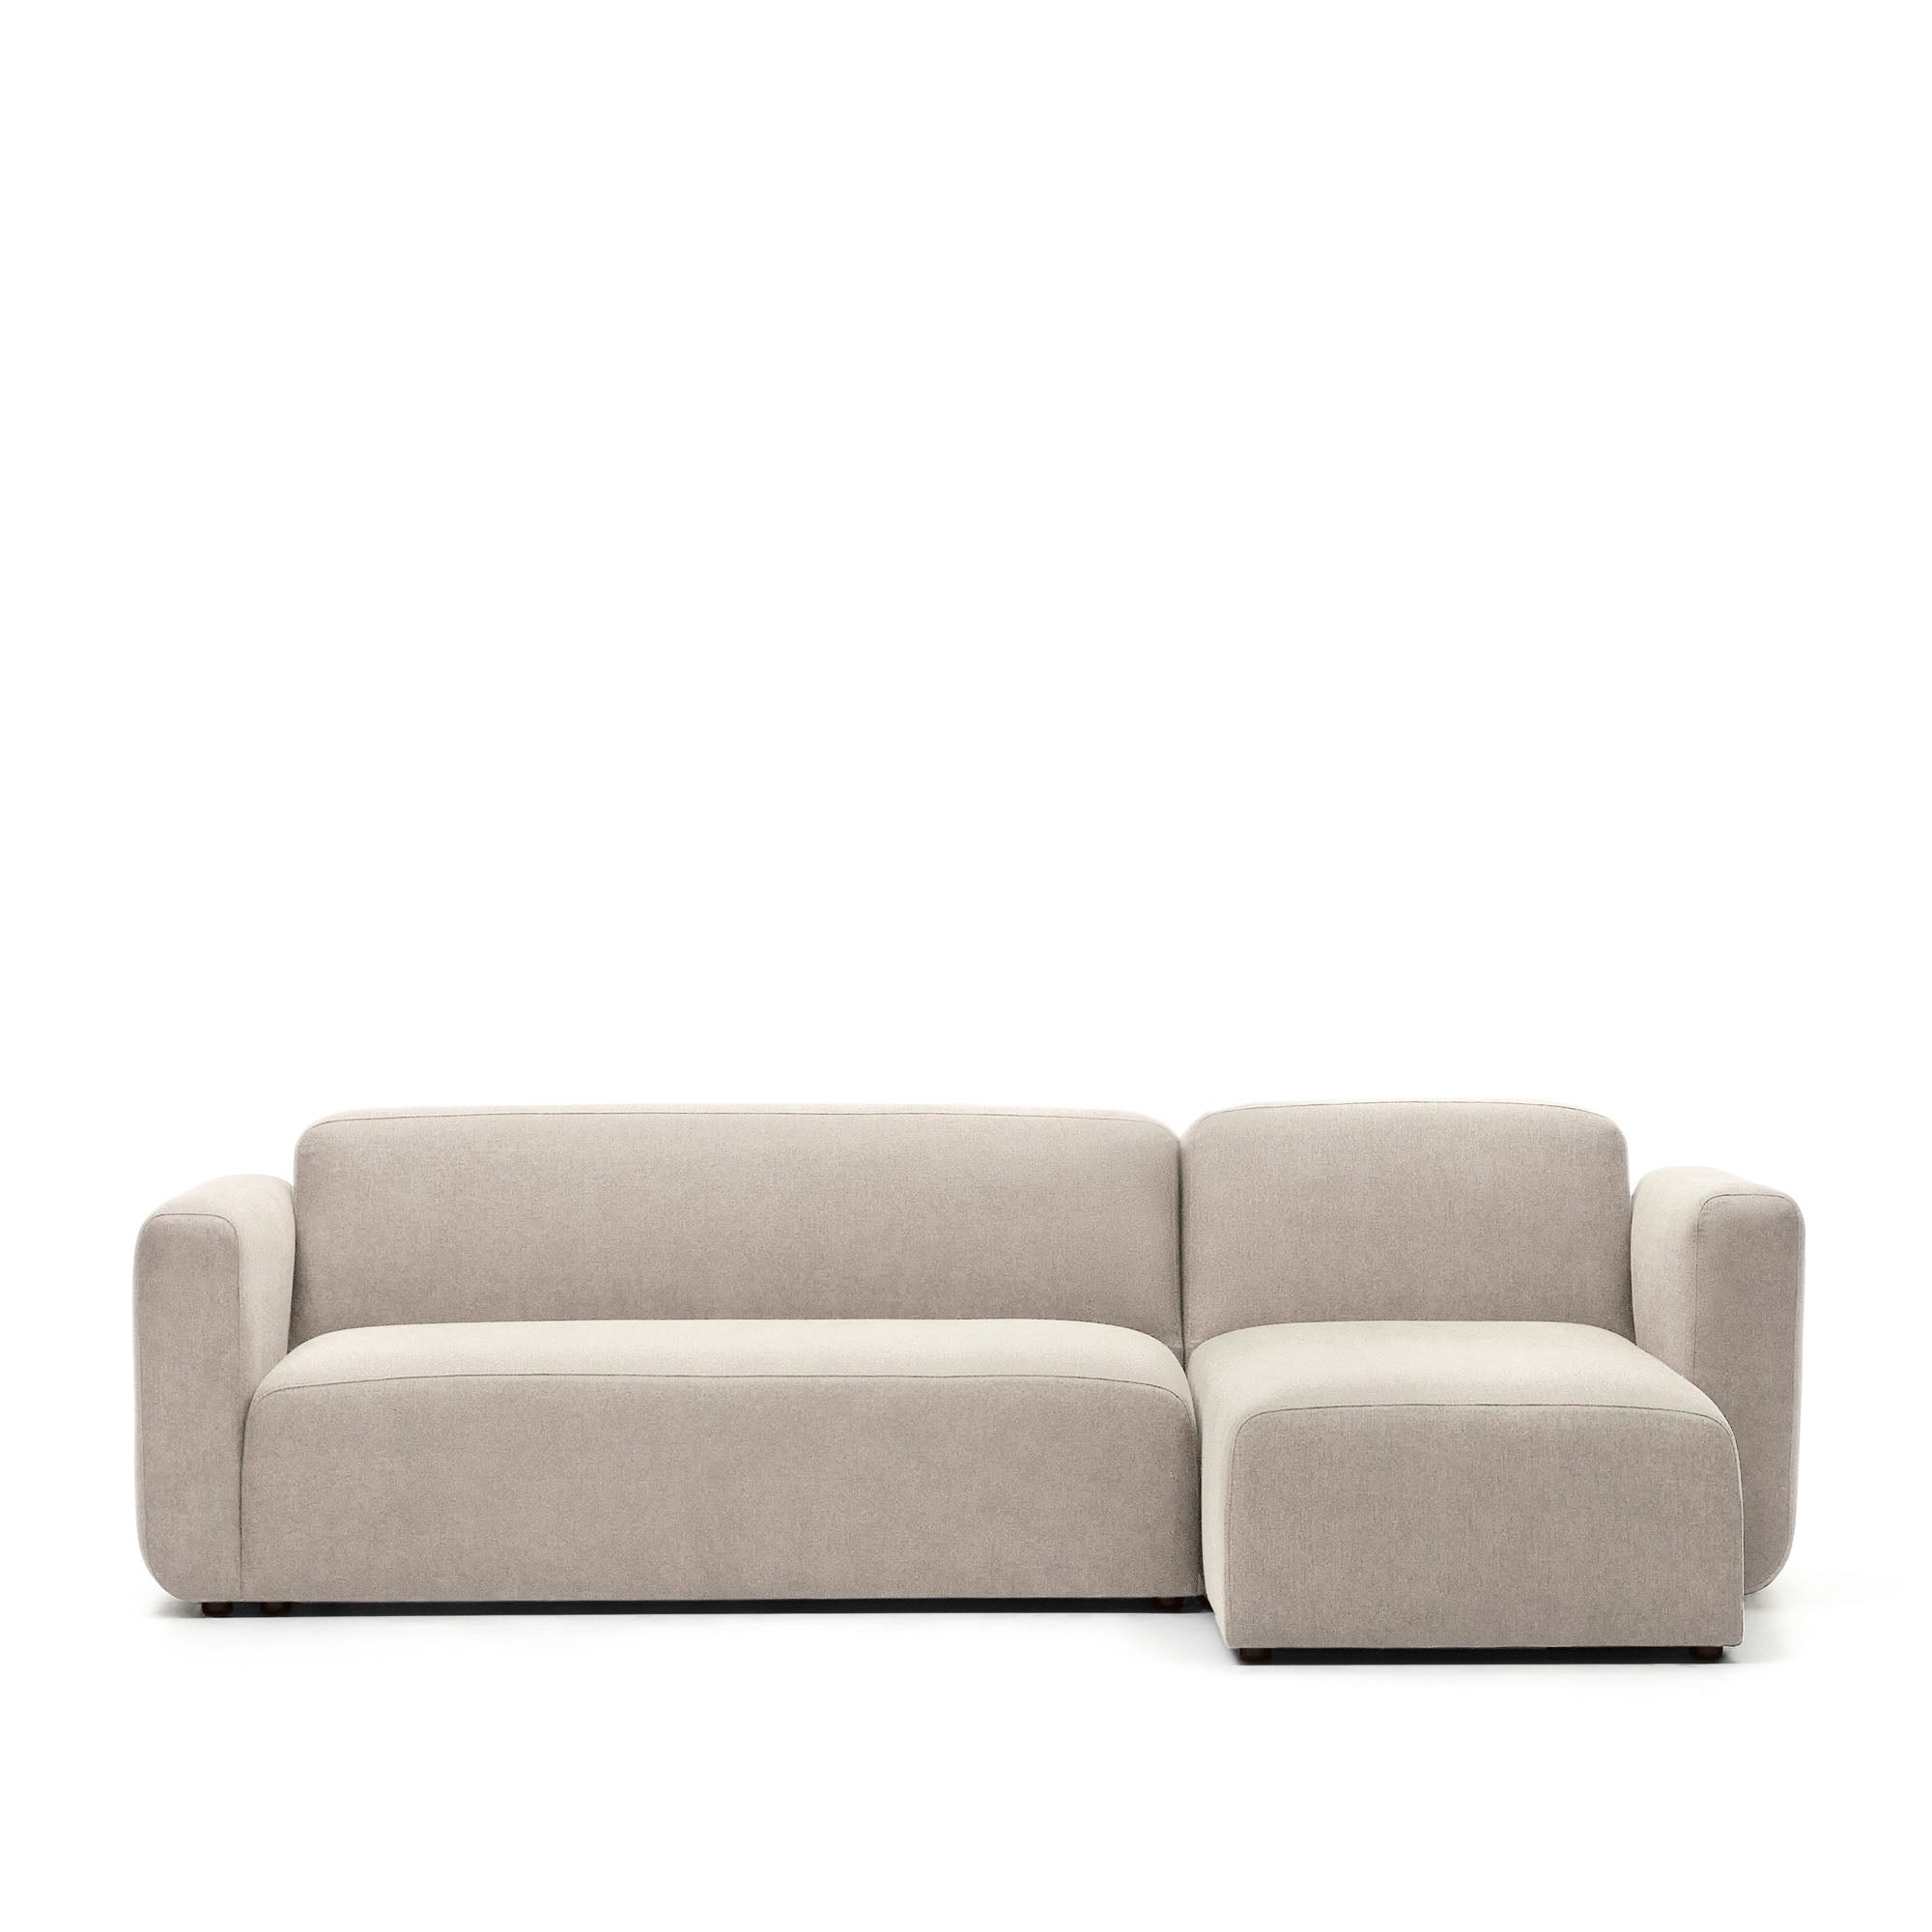 Neom 3 személyes moduláris kanapé, jobb/bal oldali fekvőgarnitúra, bézs színben, 263 cm